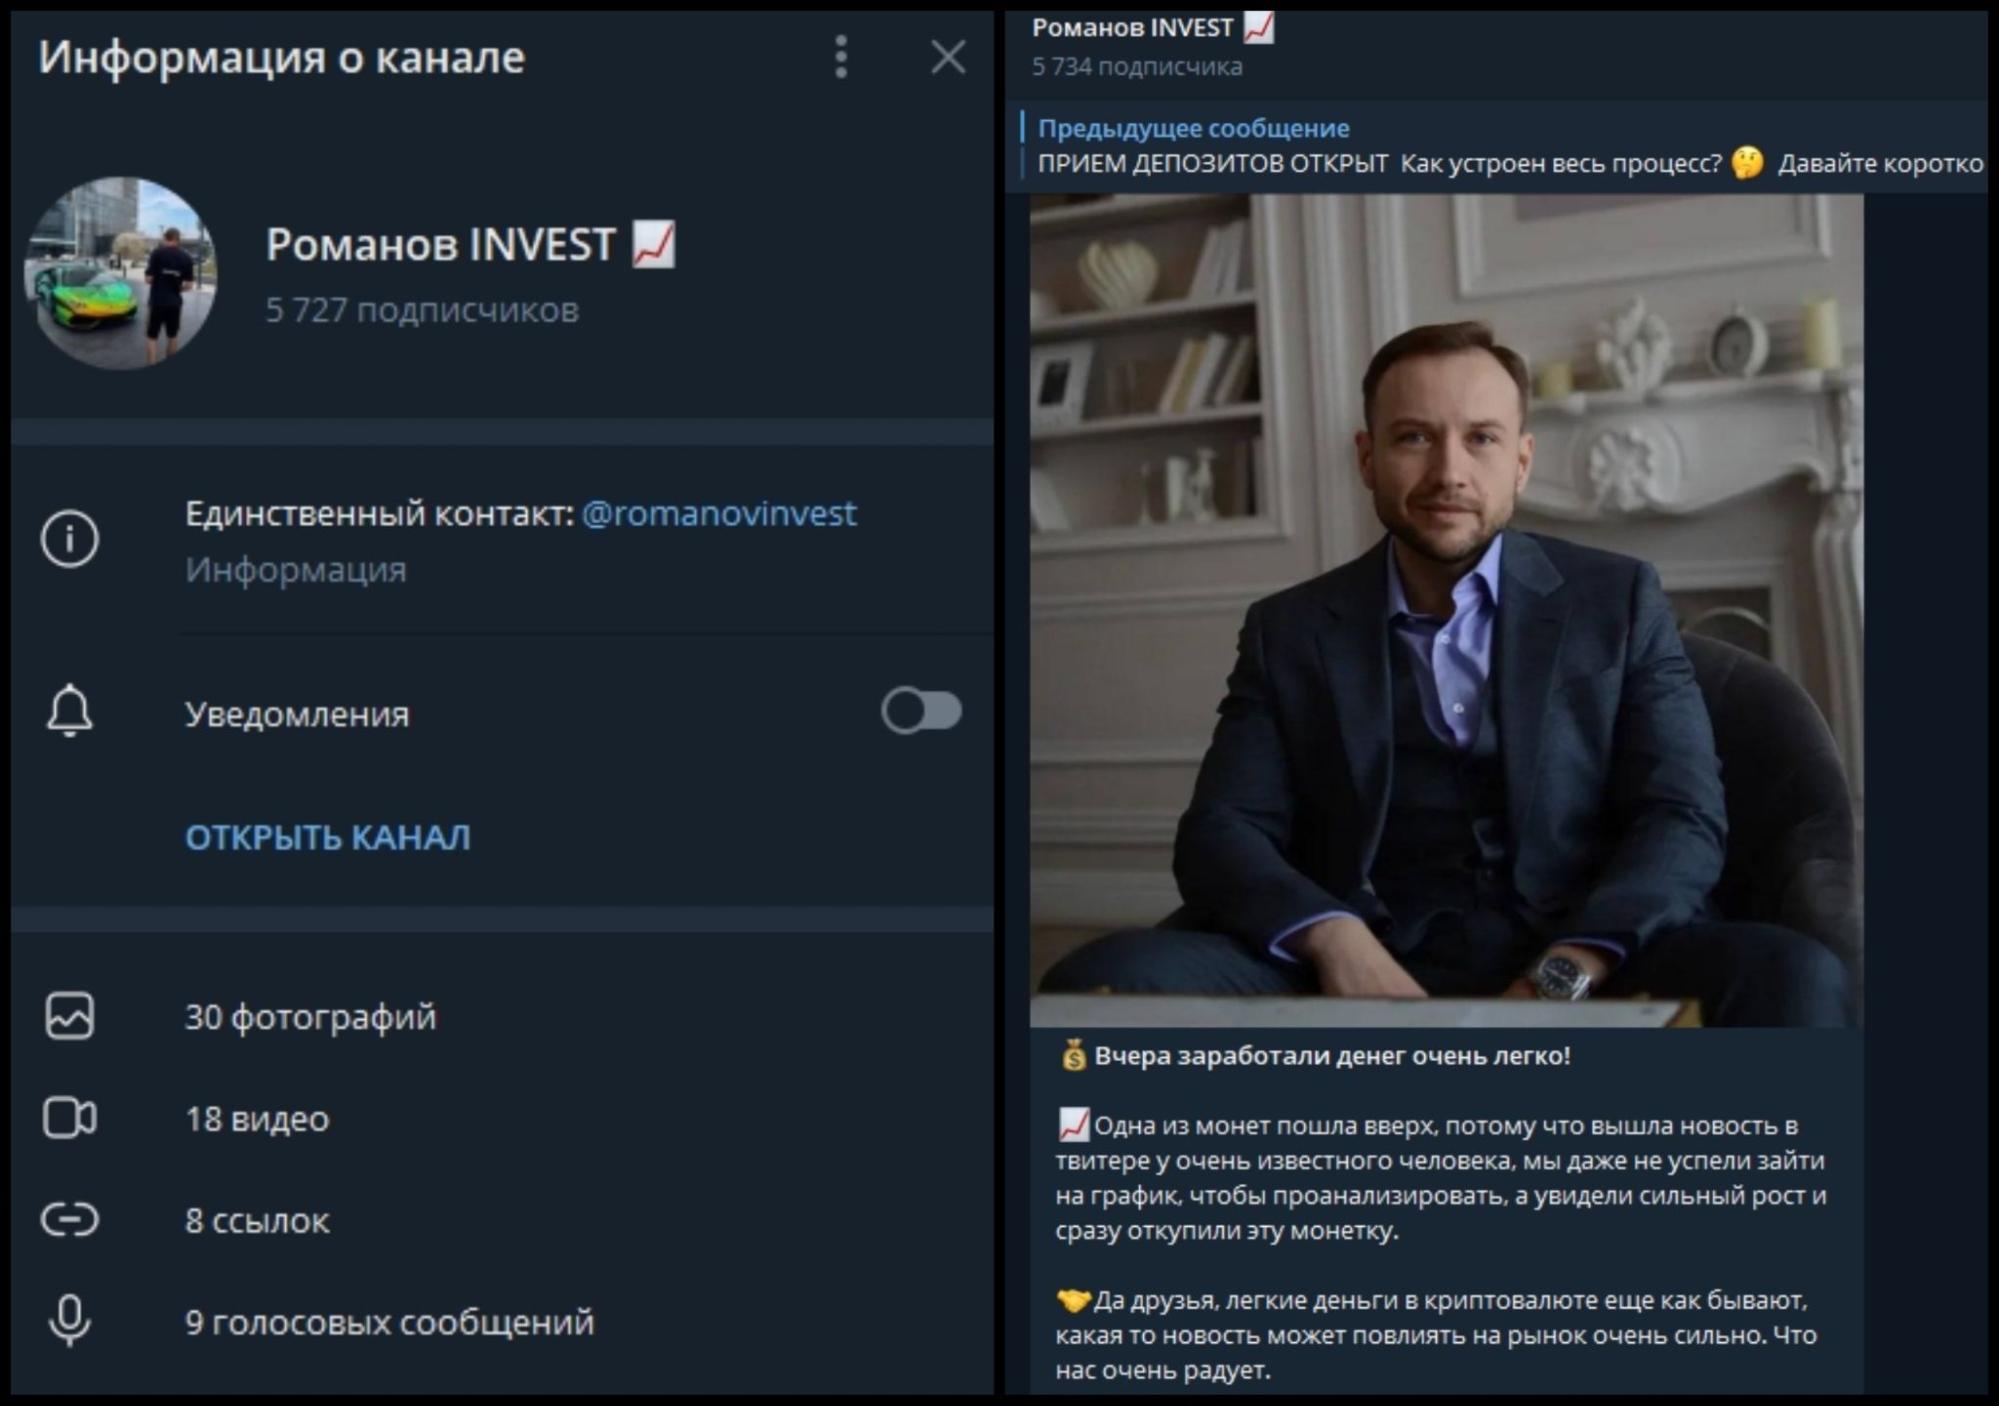 Информация о канале Романов INVEST